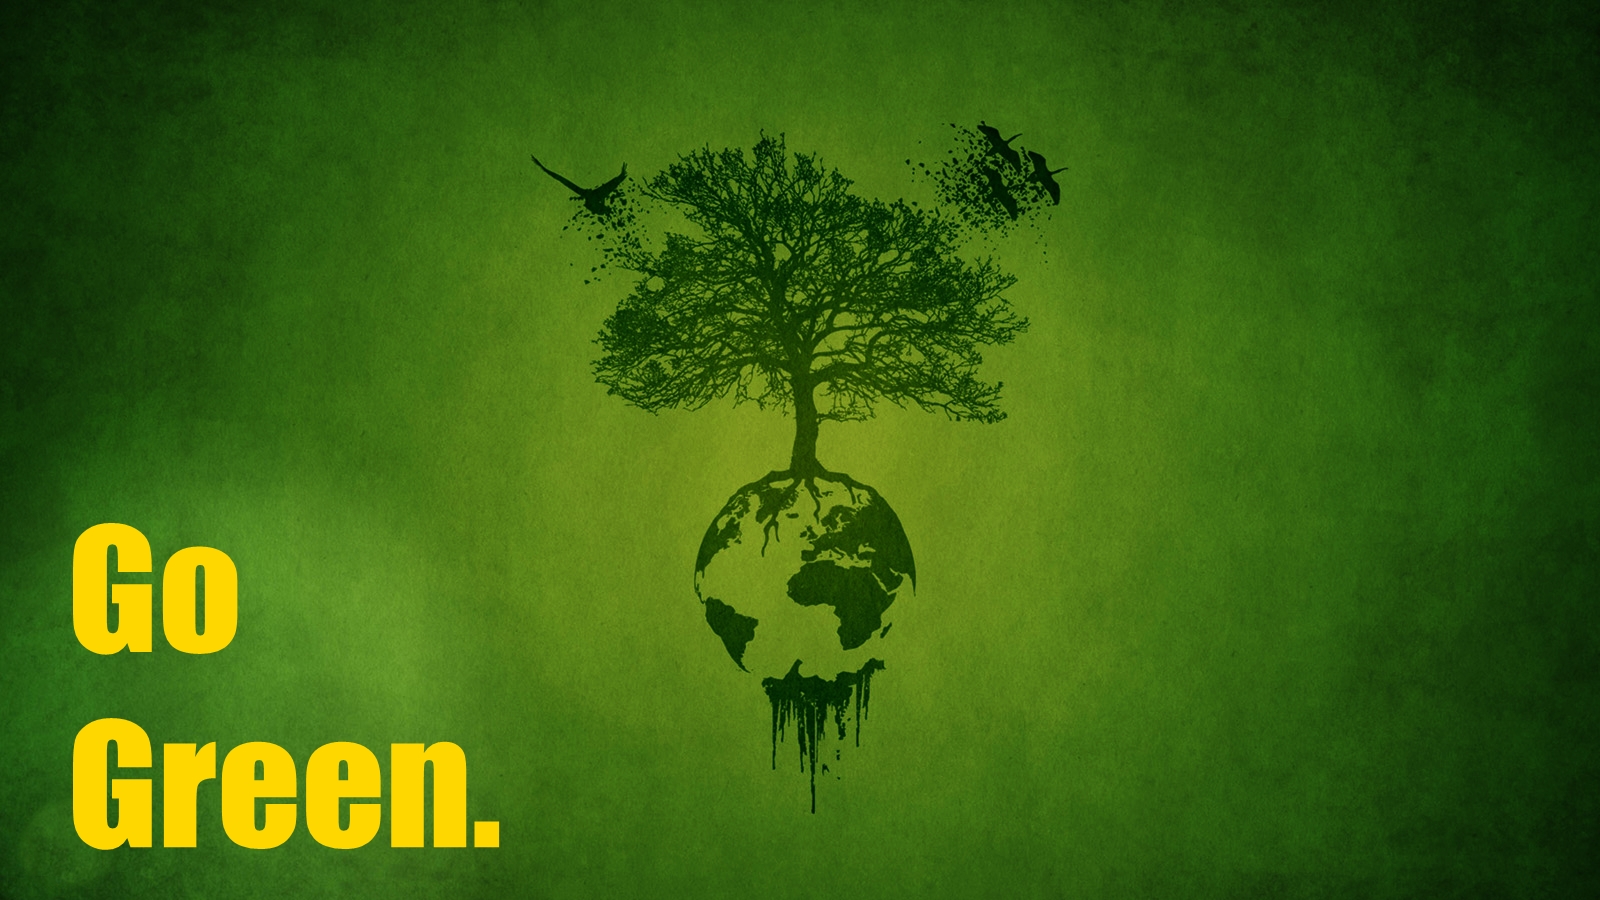 carta da parati greenpeace,verde,natura,albero,testo,giorno di pergolato